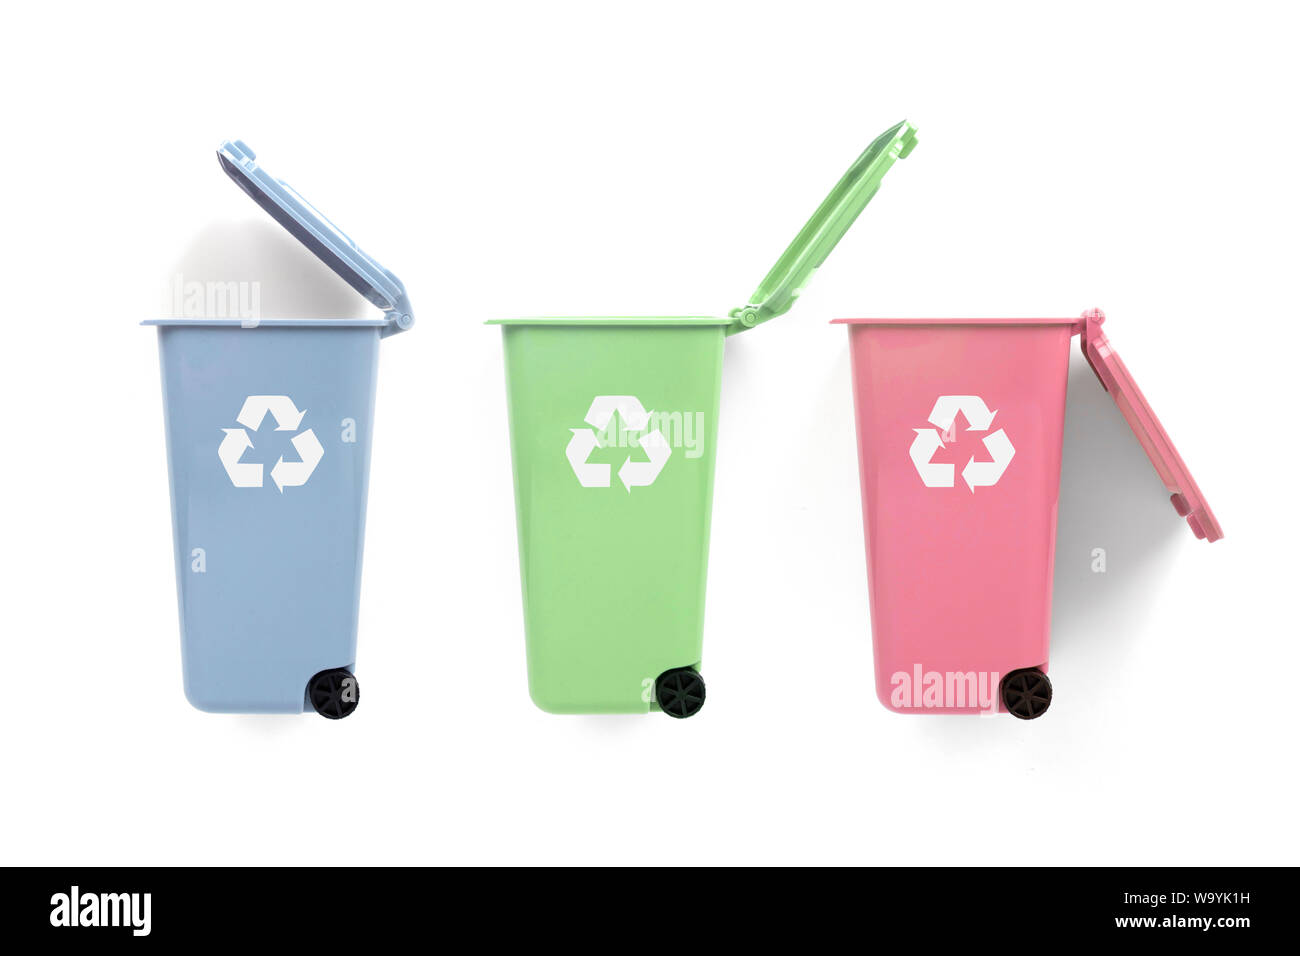 Rouge, vert et bleu avec des bacs de recyclage recycler symbole sur fond blanc Banque D'Images